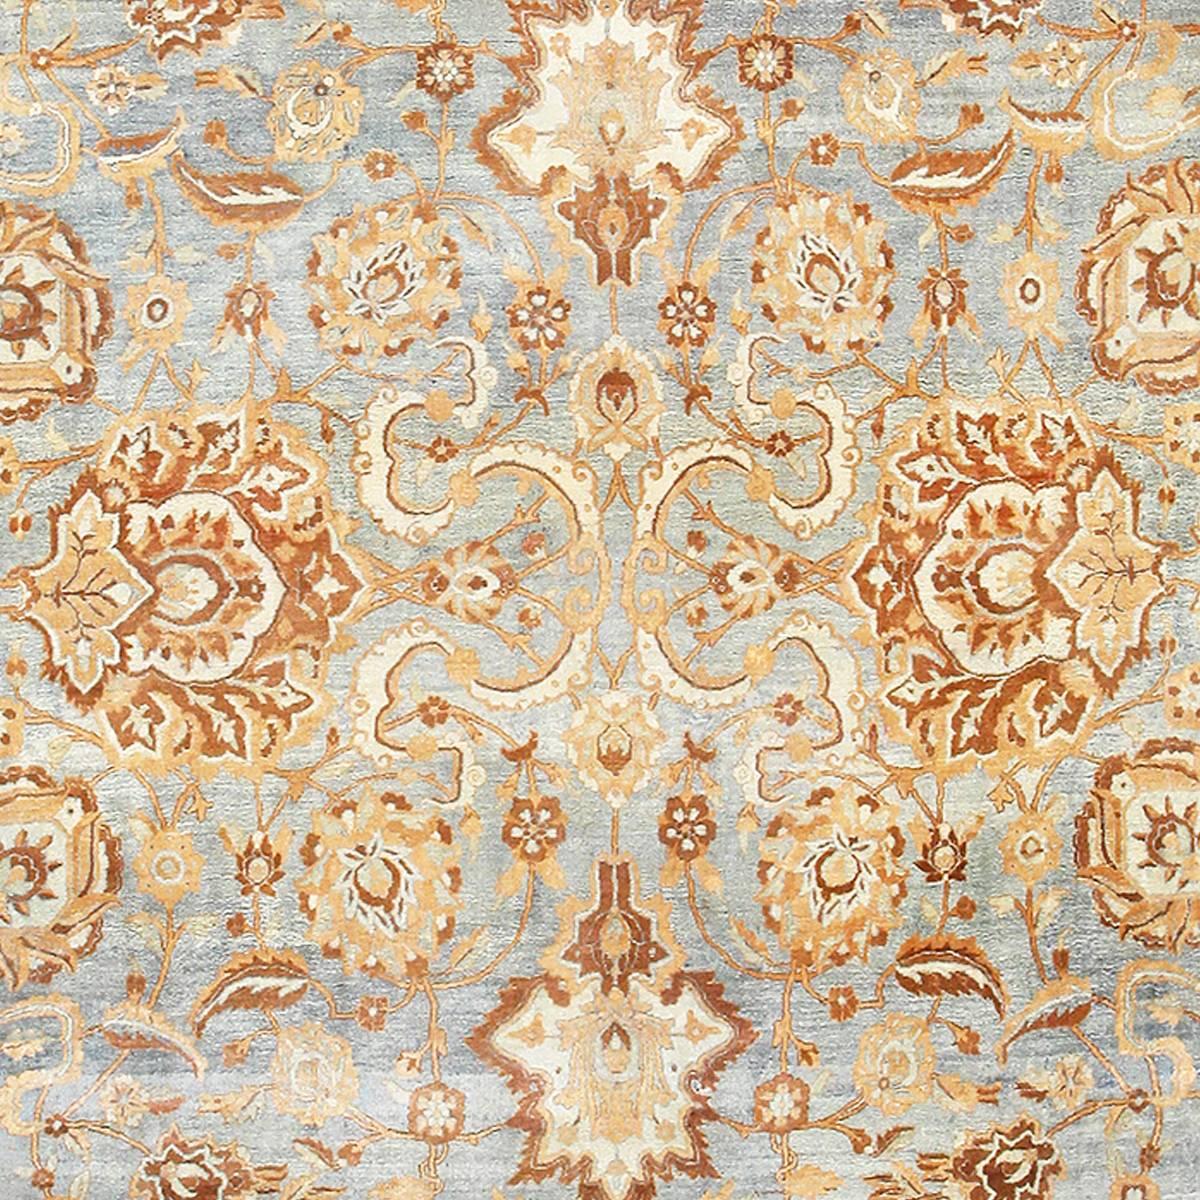 Grand tapis persan bleu clair Kerman 48869, Pays d'origine / Type de tapis : Tapis persans, Circa Date : 1920 - Size : 10 ft 6 in x 19 ft (3.2 m x 5.79 m)

Les tisserands de Kerman produisent depuis près de 400 ans des tapis parmi les plus beaux du